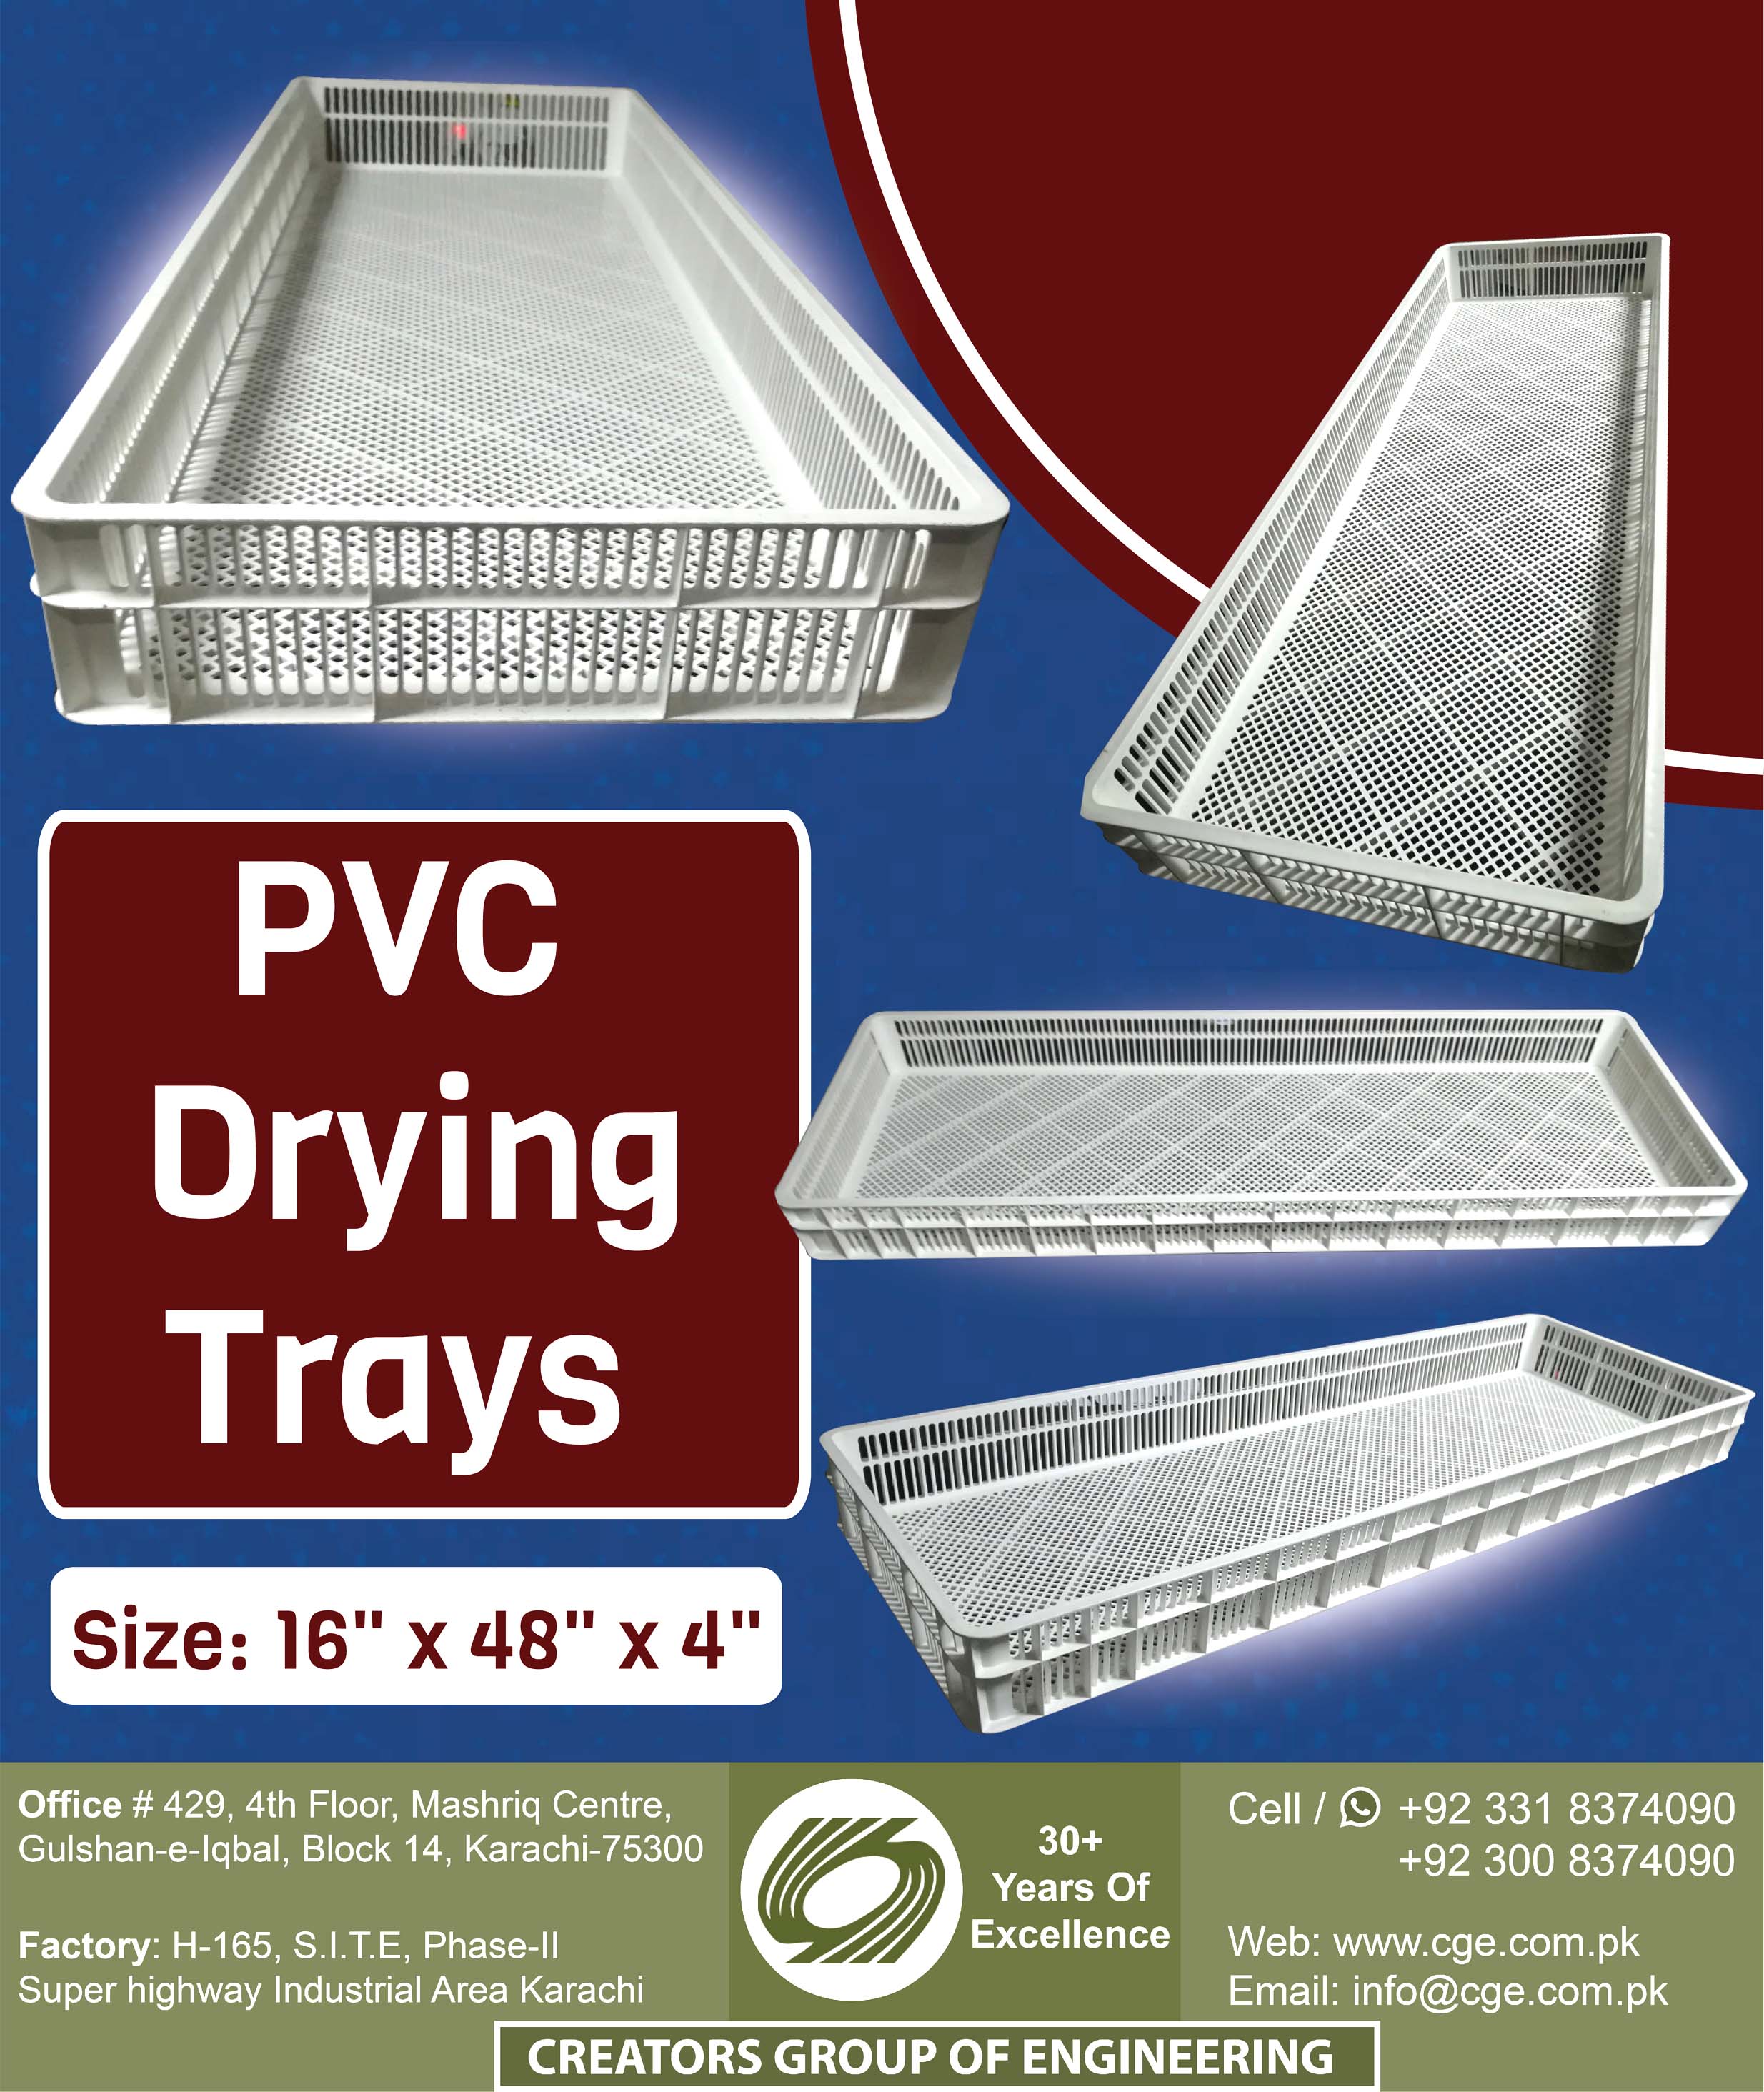 PVC Drying Trays